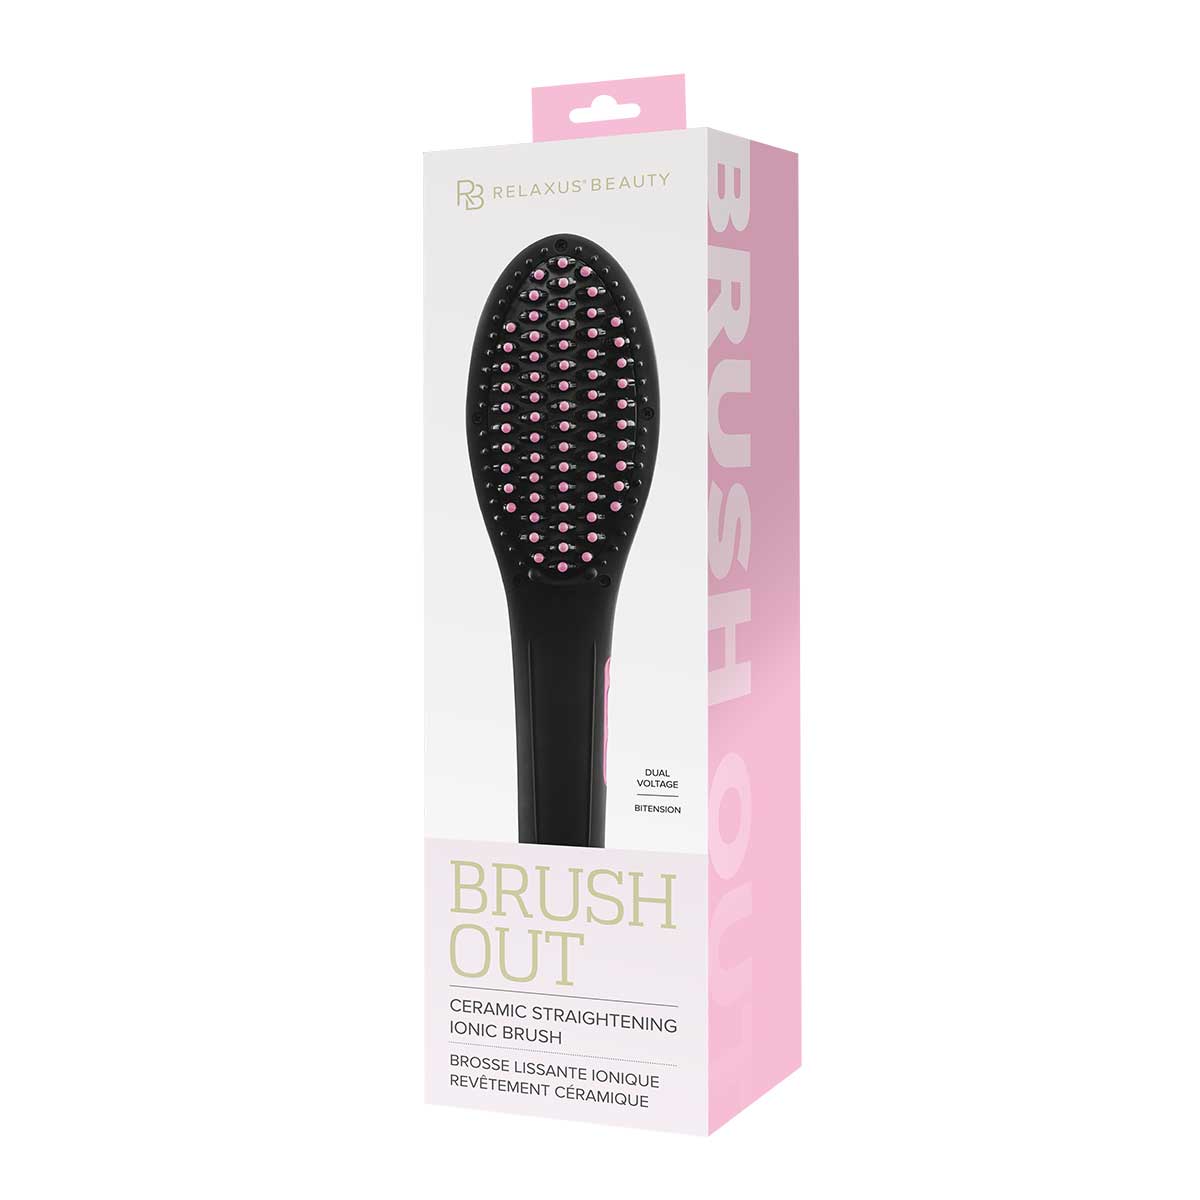 Brush Out Straightening Brush – Relaxus Beauty